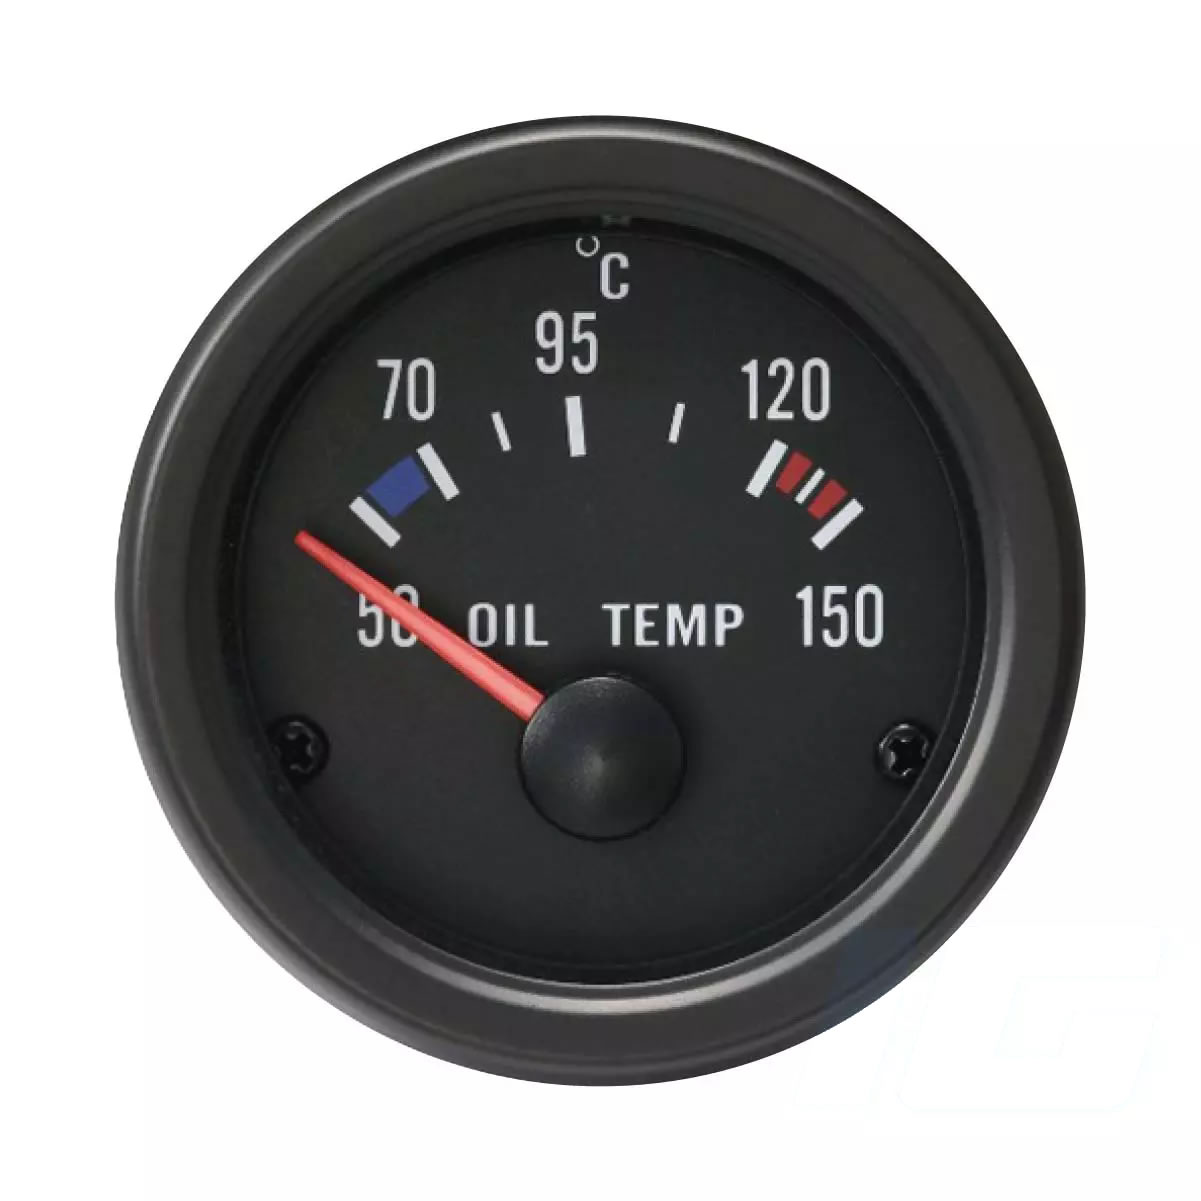 Oil temperature gauges